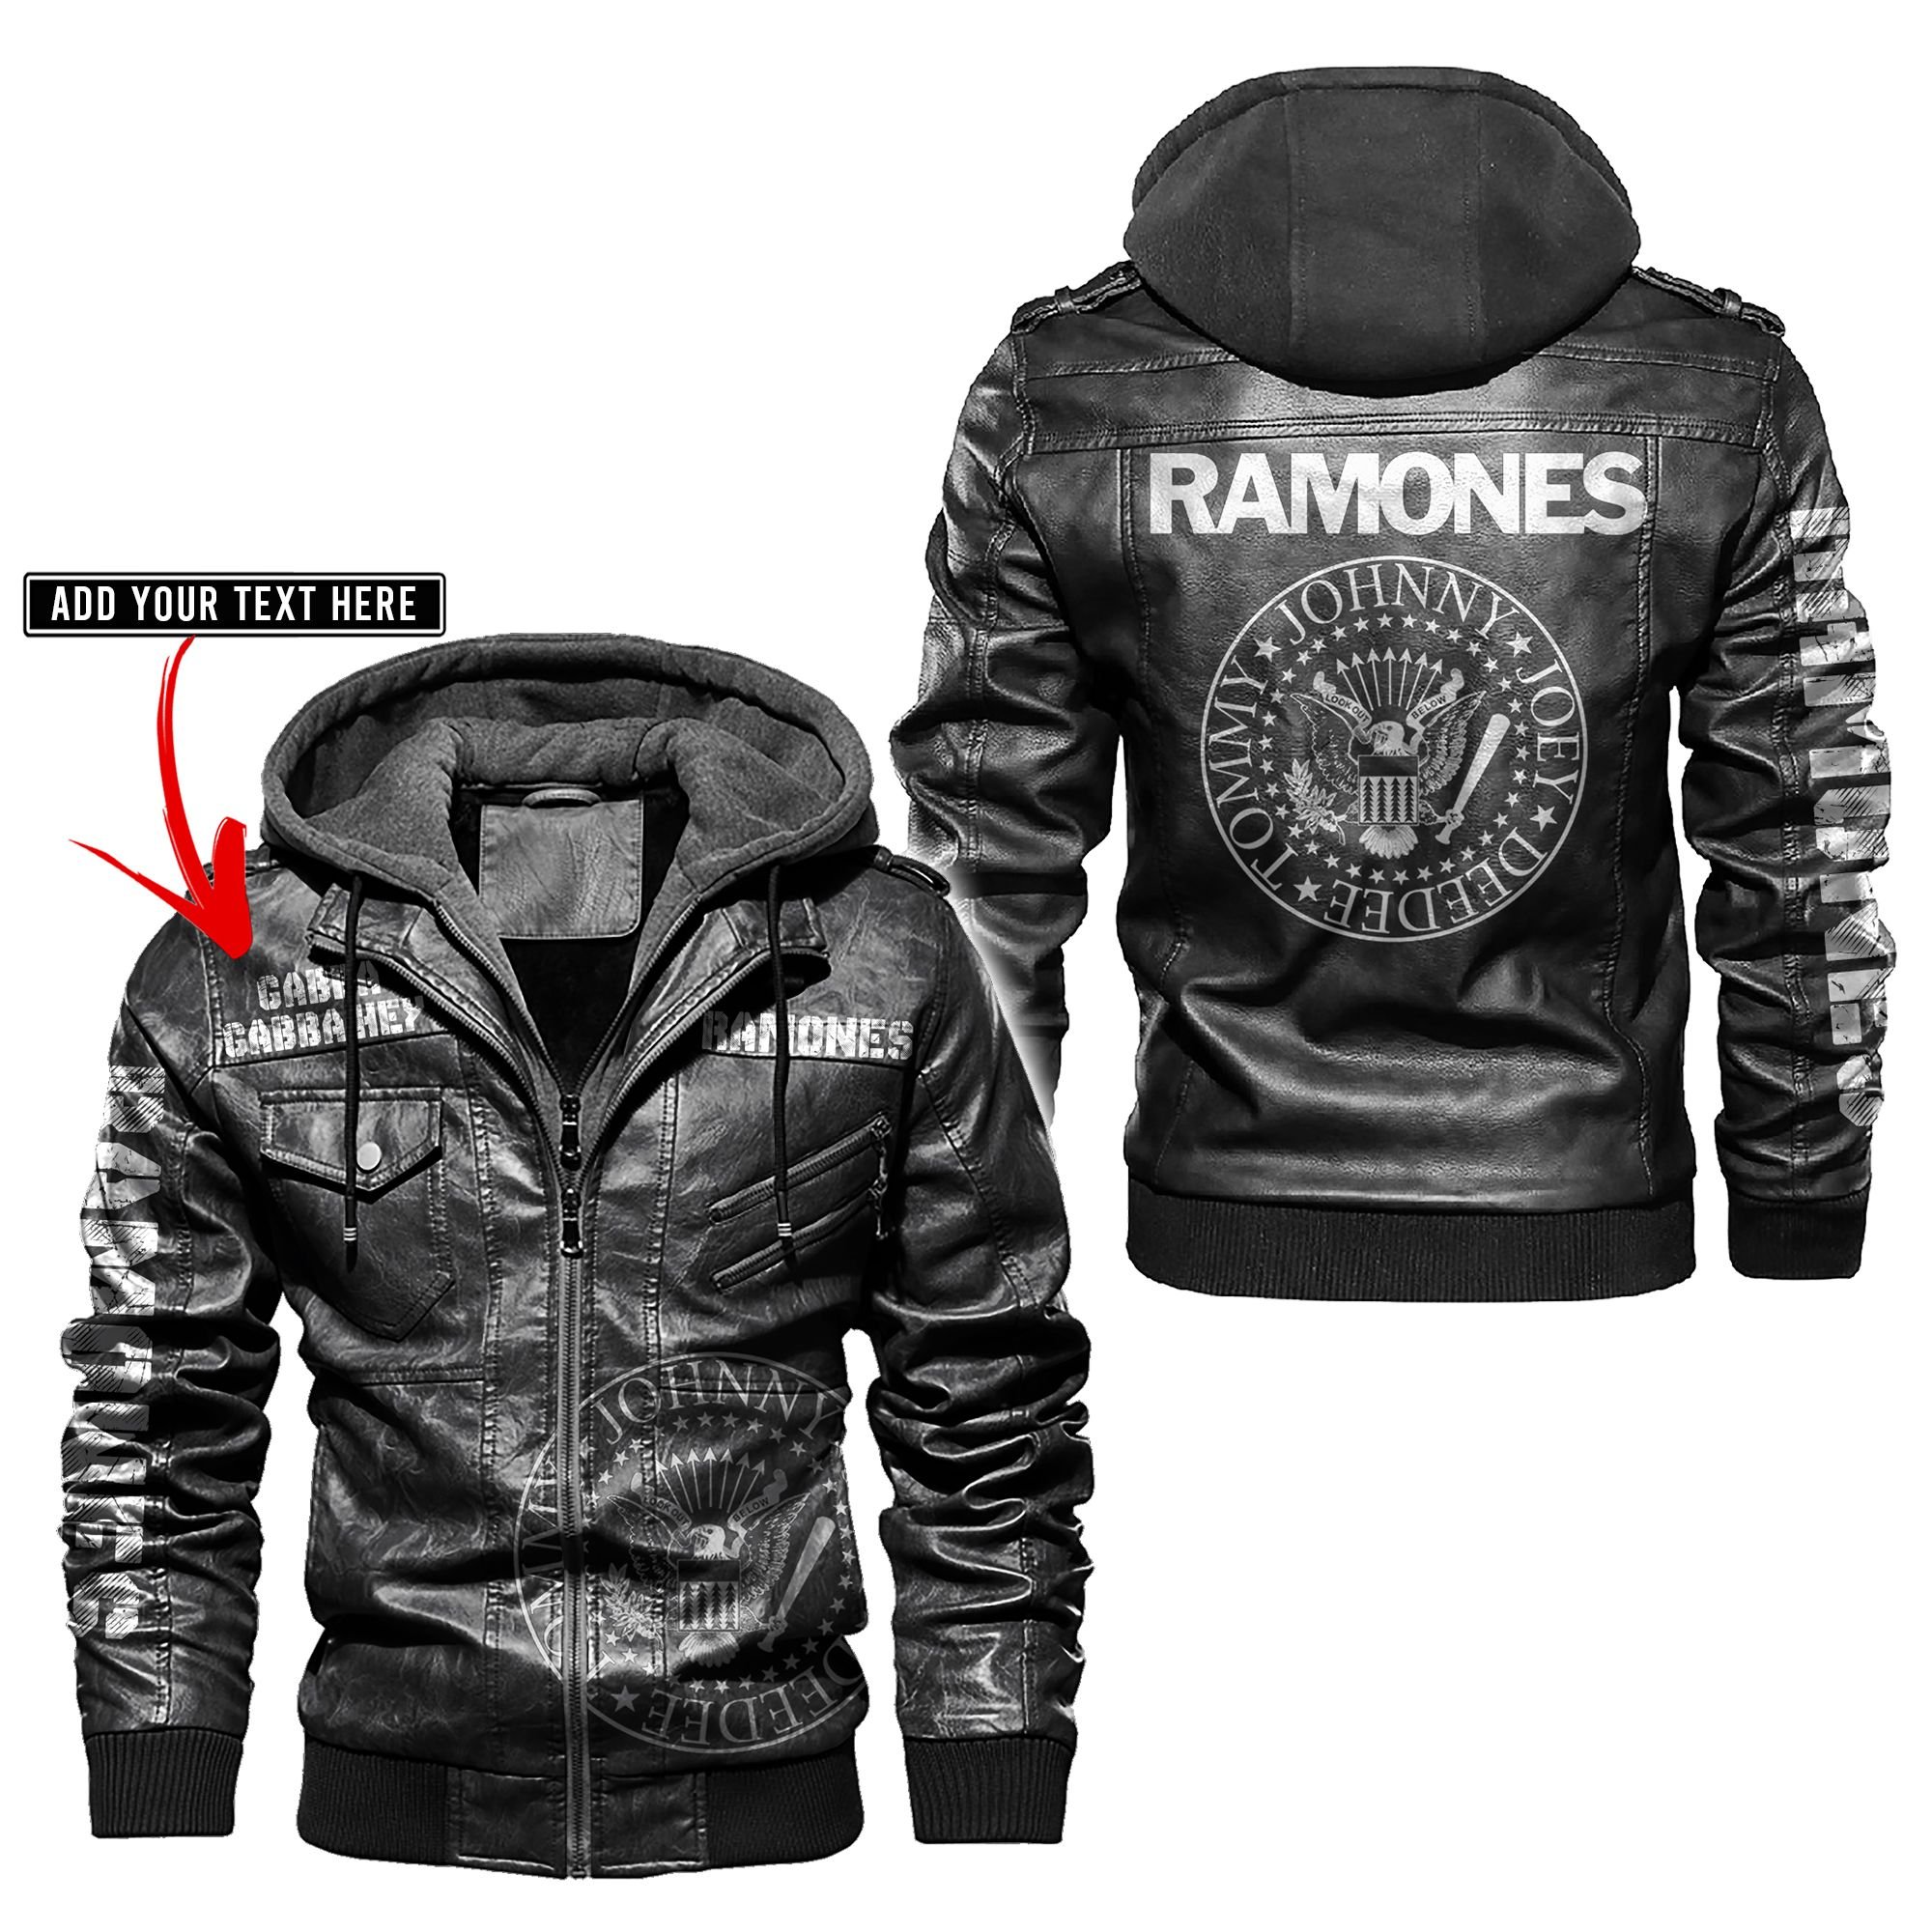 Ramones band custom personalized name leather jacket